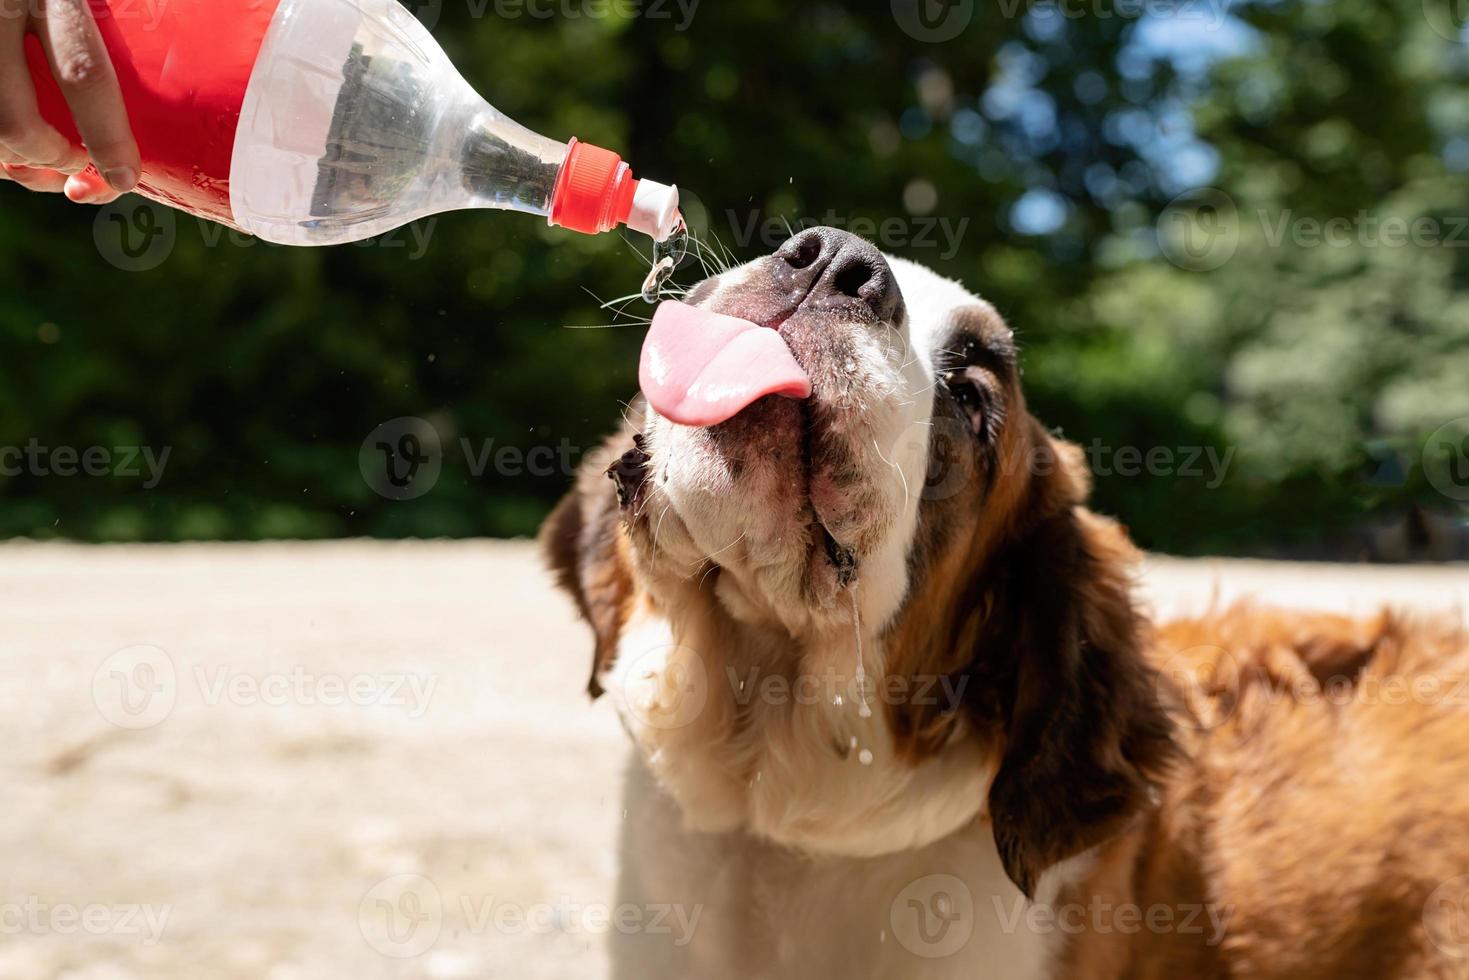 törstig st. bernard hund dricka från plast flaska utomhus i varm sommar dag, vatten stänk och sprayer foto